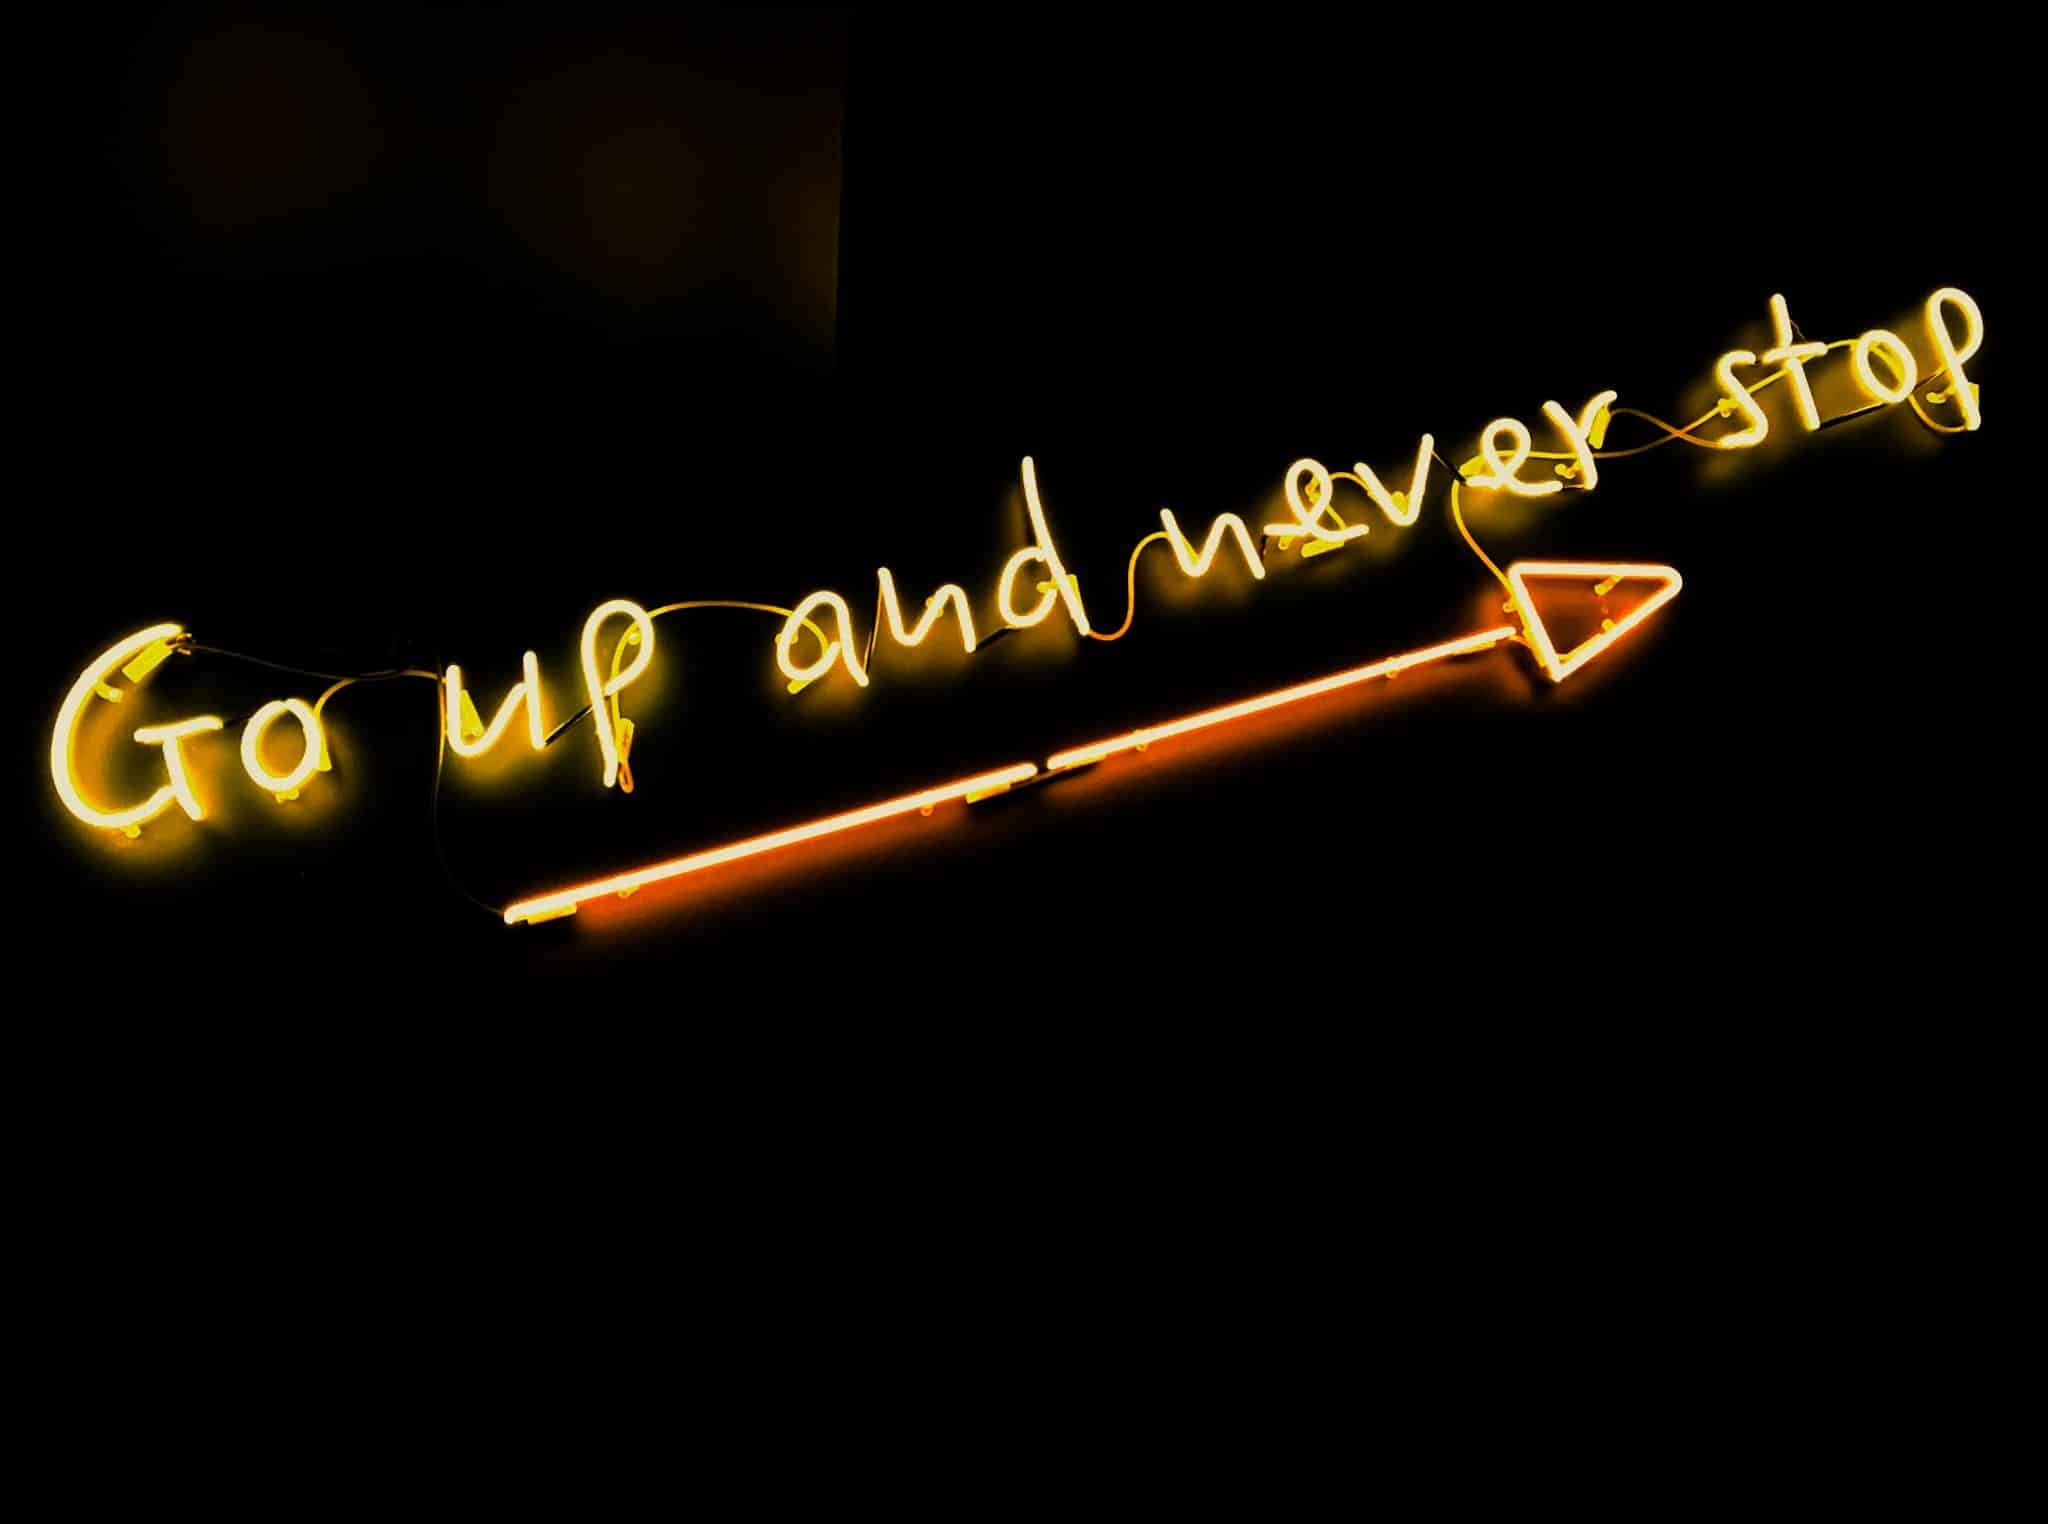 Das Bild zeigt den Satz "Go up and never stop", der erhellt in der Dunkelheit leuchtet. Darunter leuchtet ein Pfeil, der nach rechts oben zeigt und den Satz unterstreicht.